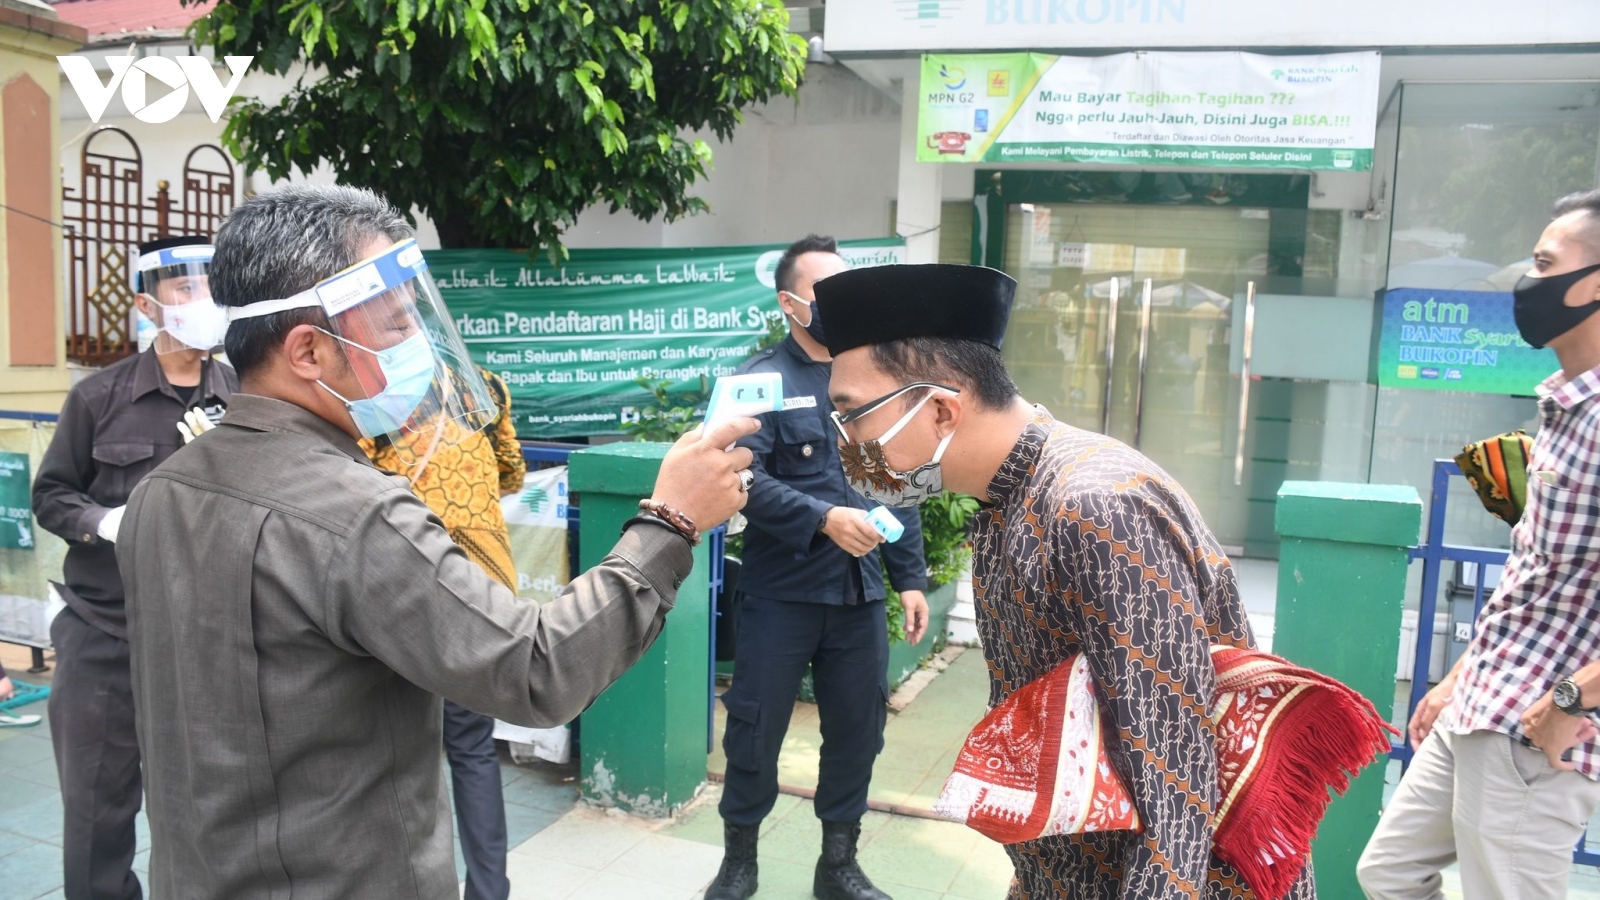 Indonesia lo chống dịch dịp lễ Eid Al-Fitr, Thái Lan có 34 ca Covid-19 tử vong trong ngày